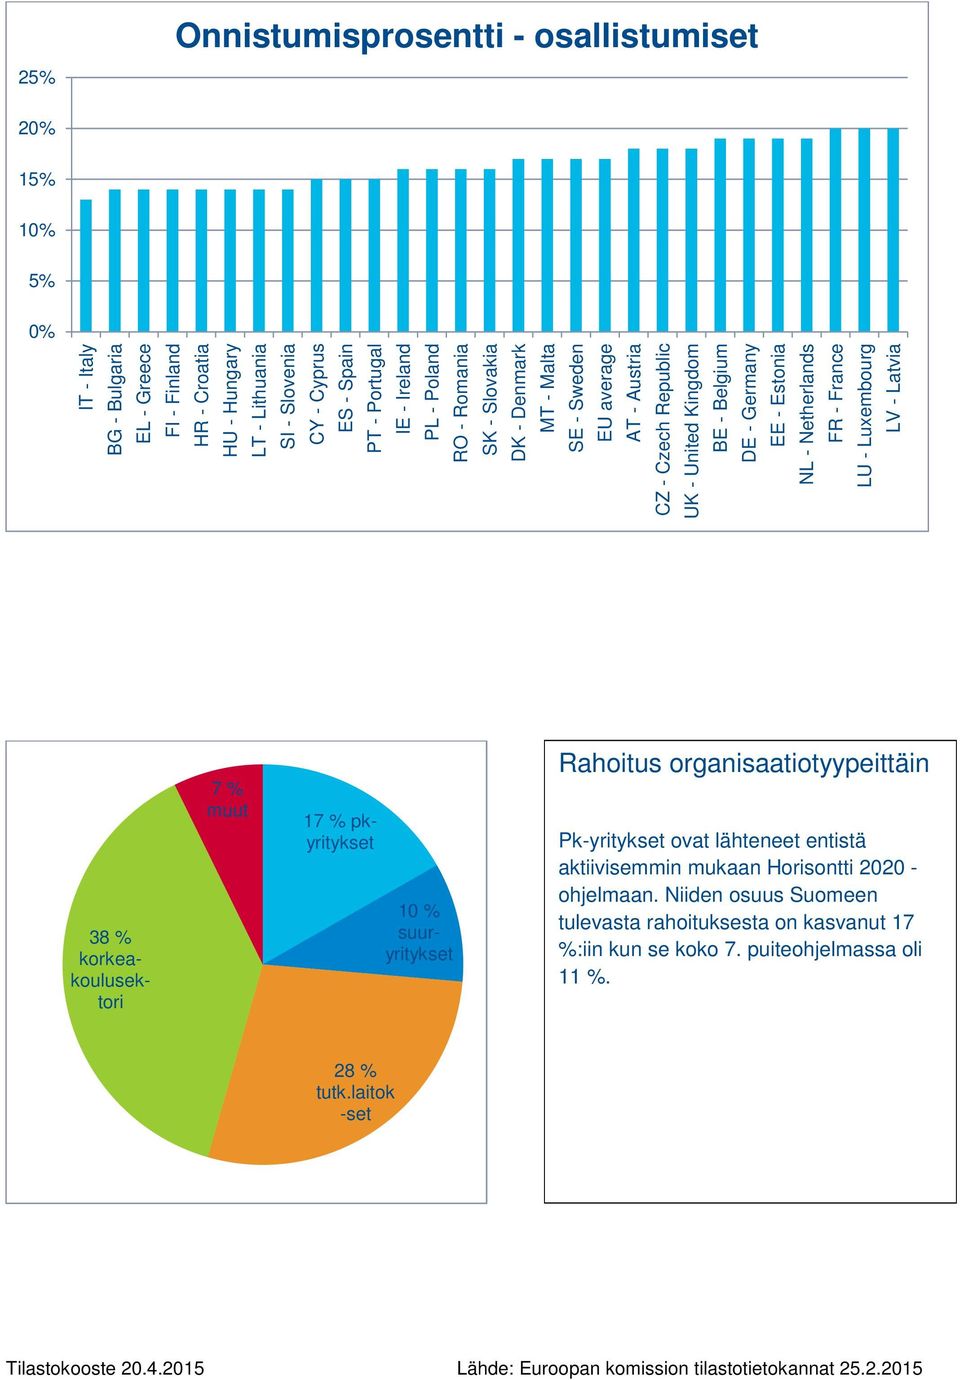 Estonia NL - Netherlands FR - France LU - Luxembourg LV - Latvia 38 % korkeakoulusektori 7 % muut 17 % pkyritykset 10 % suuryritykset Rahoitus organisaatiotyypeittäin Pk-yritykset ovat